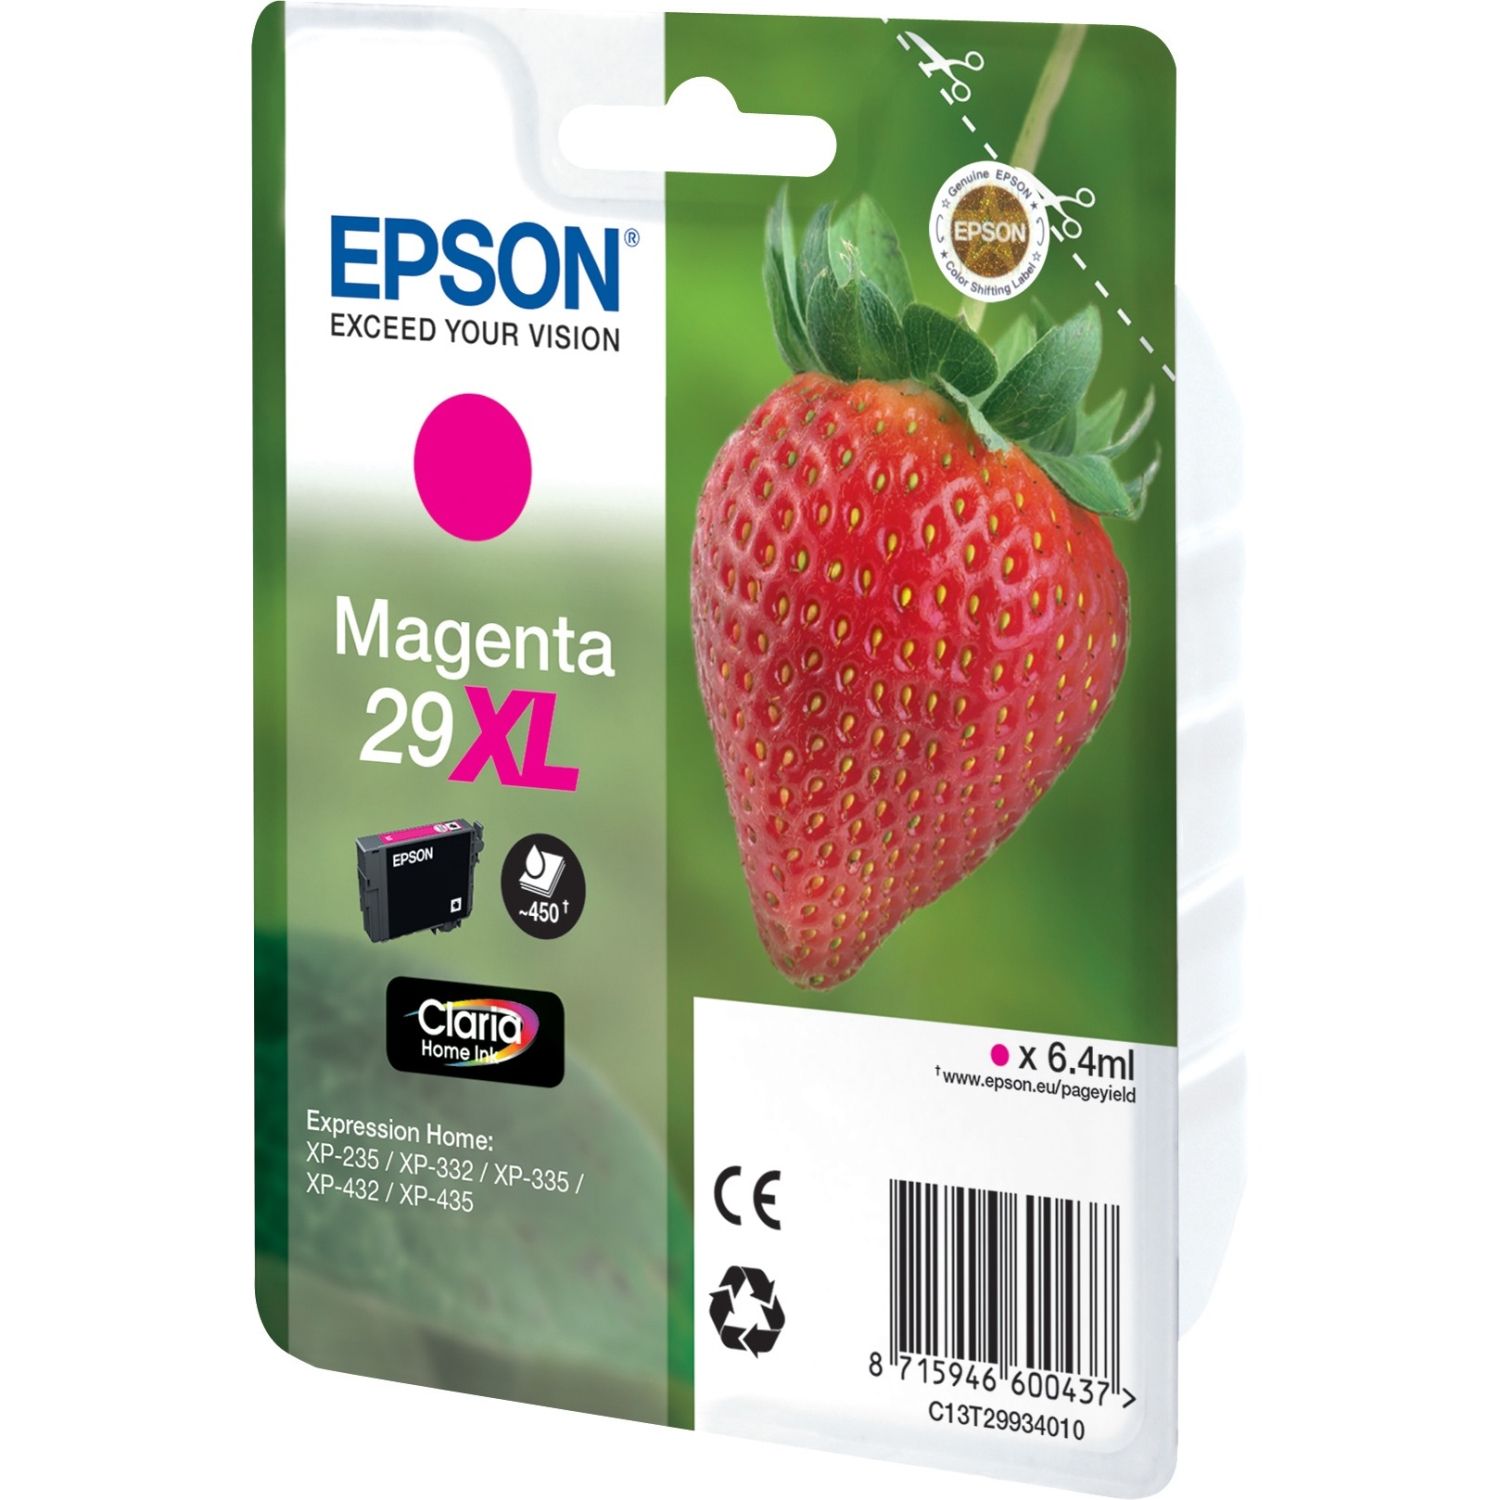 Epson-29Xl-magenta-tinta-original